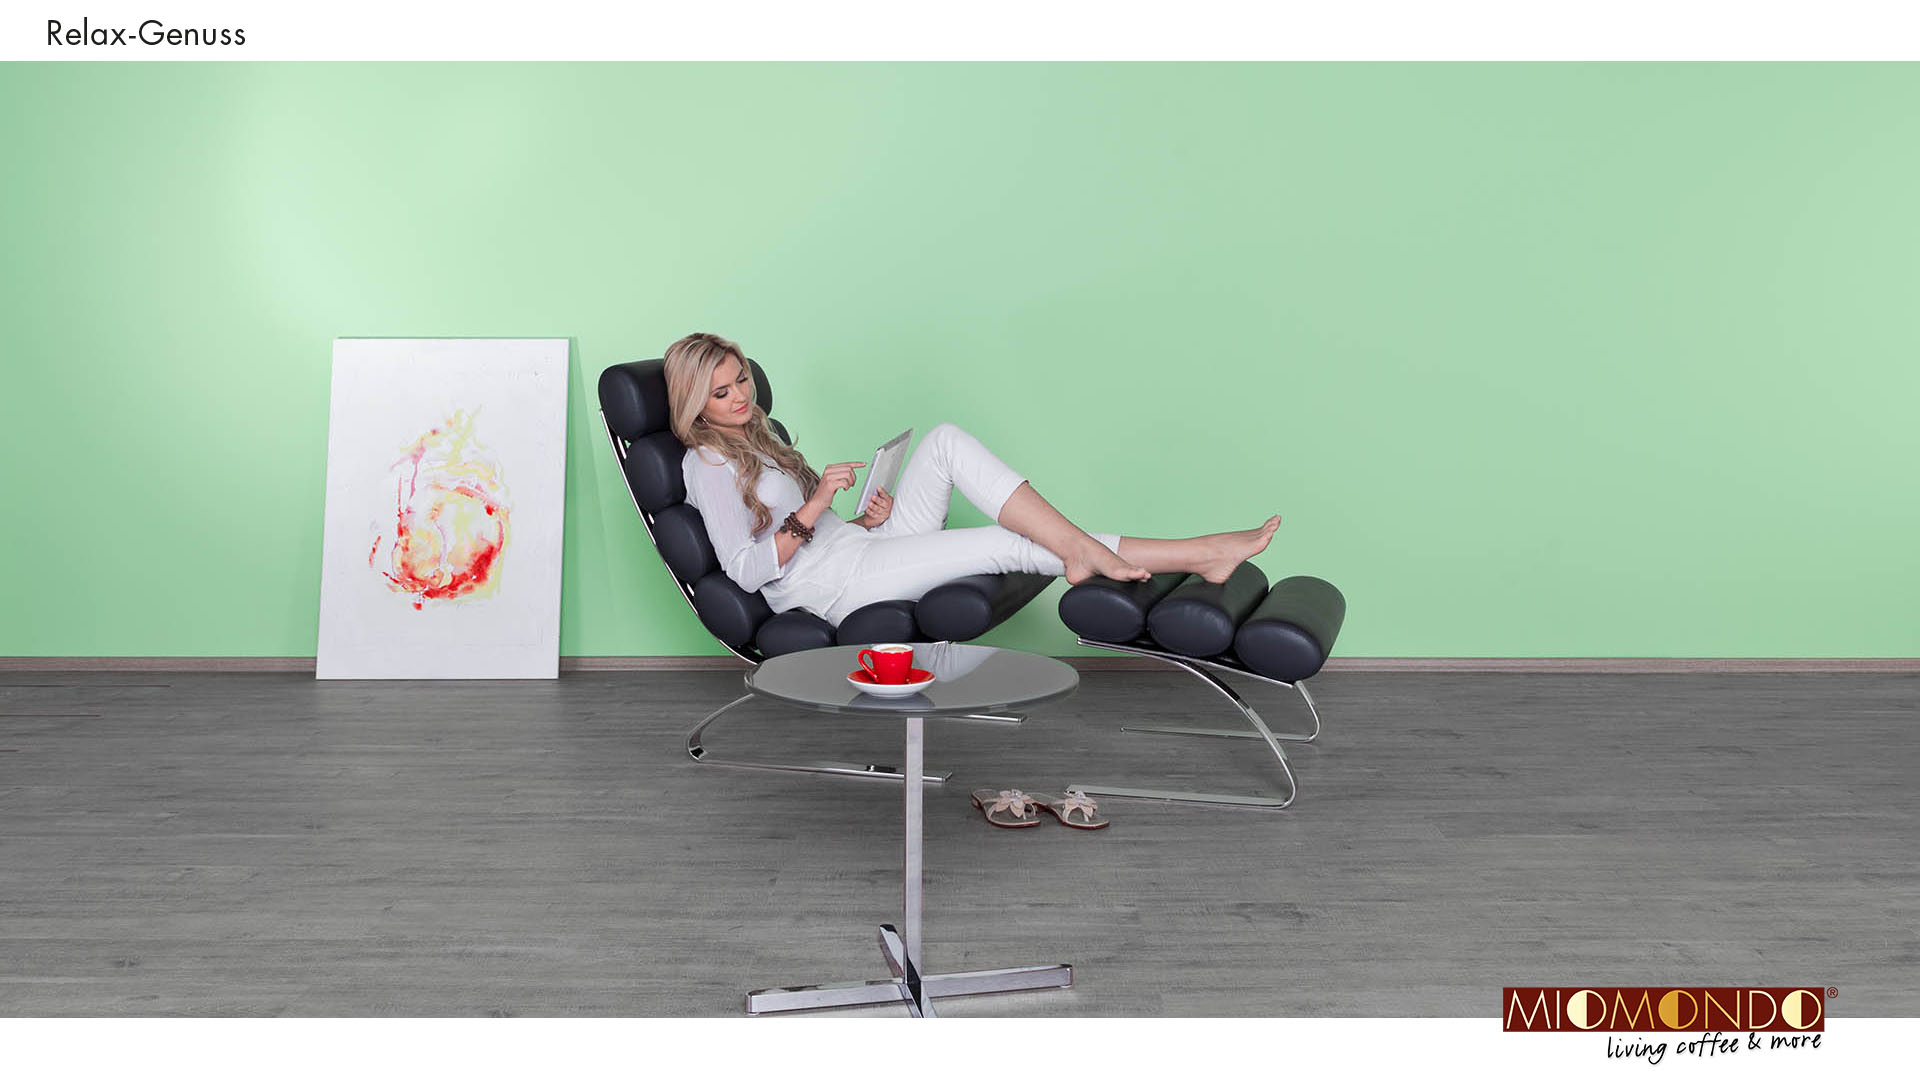 Scribble Werbeagentur in Geilenkirchen, Kreis Heinsberg, zeigt eine Frau, die in einem Sessel relaxt.